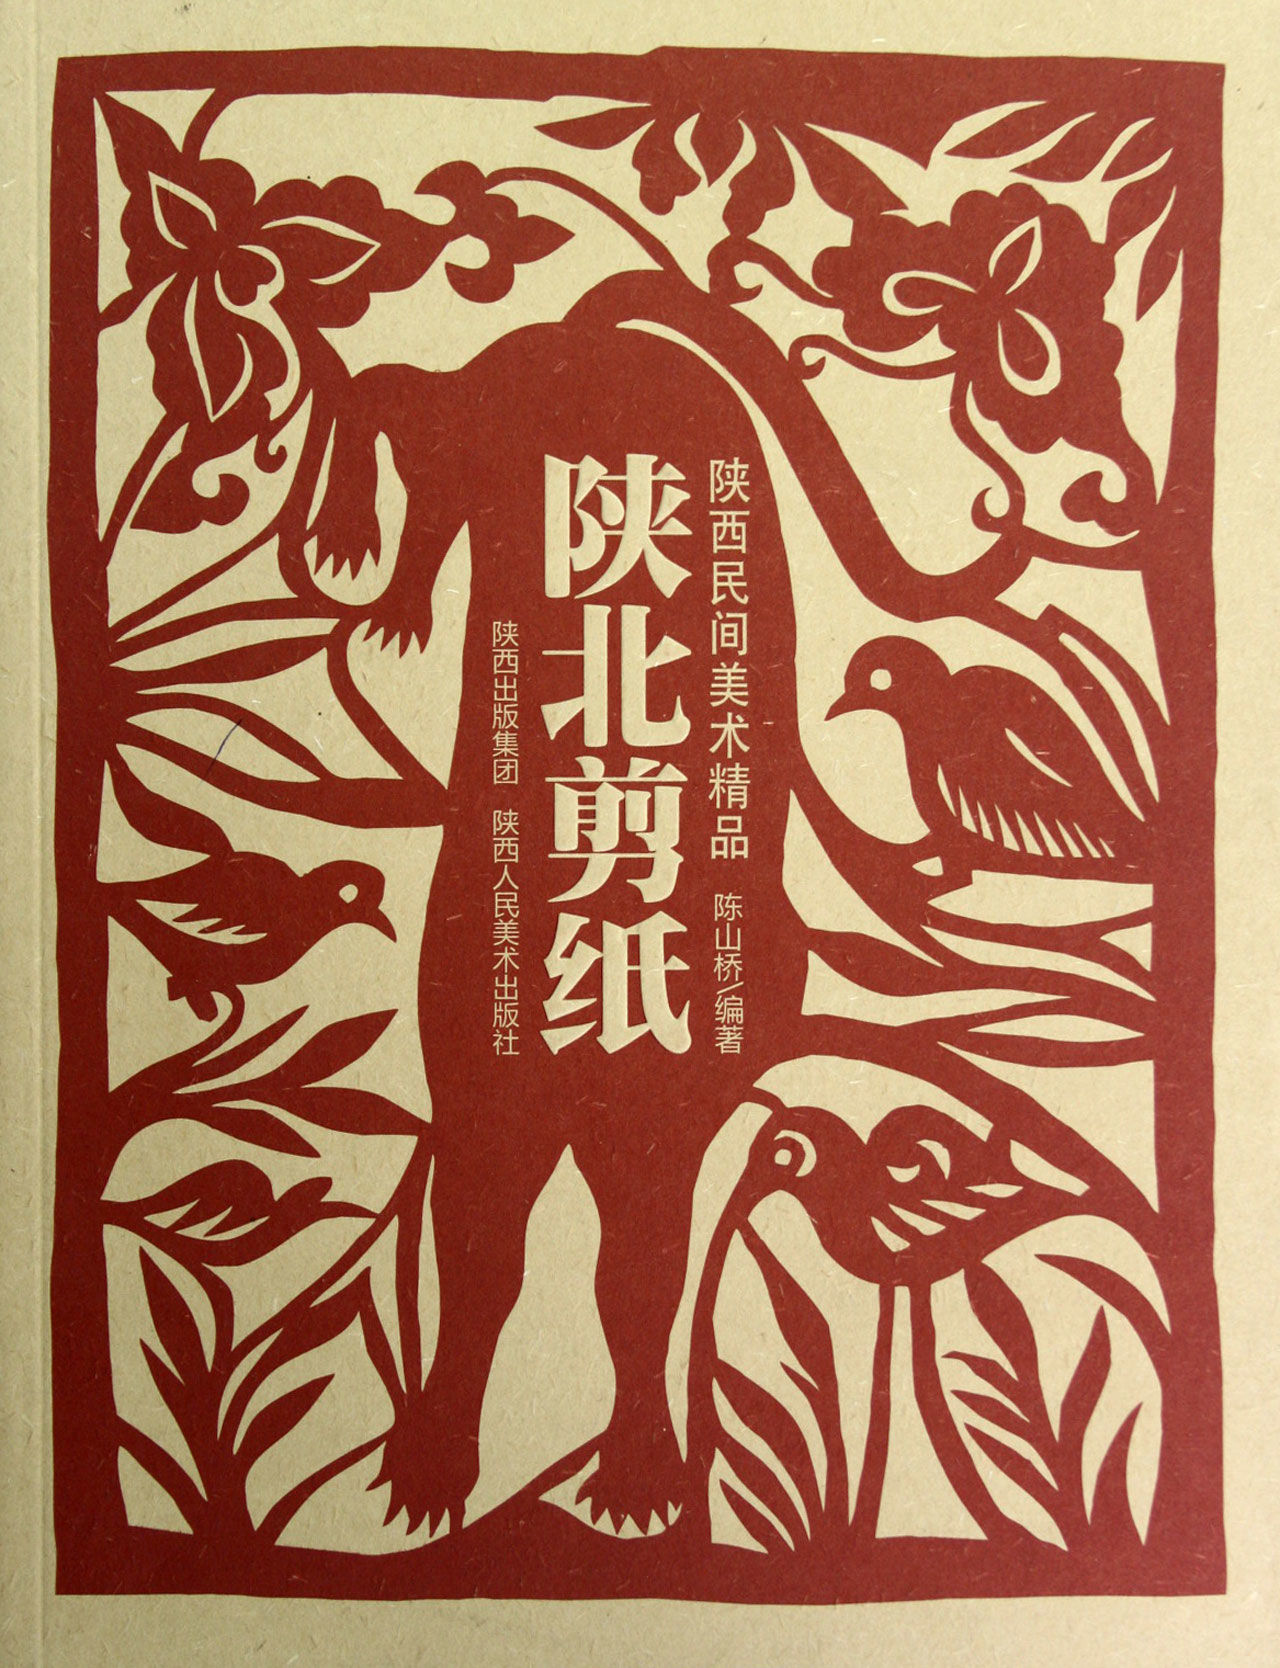 陕北剪纸艺术社60周年剪纸作品